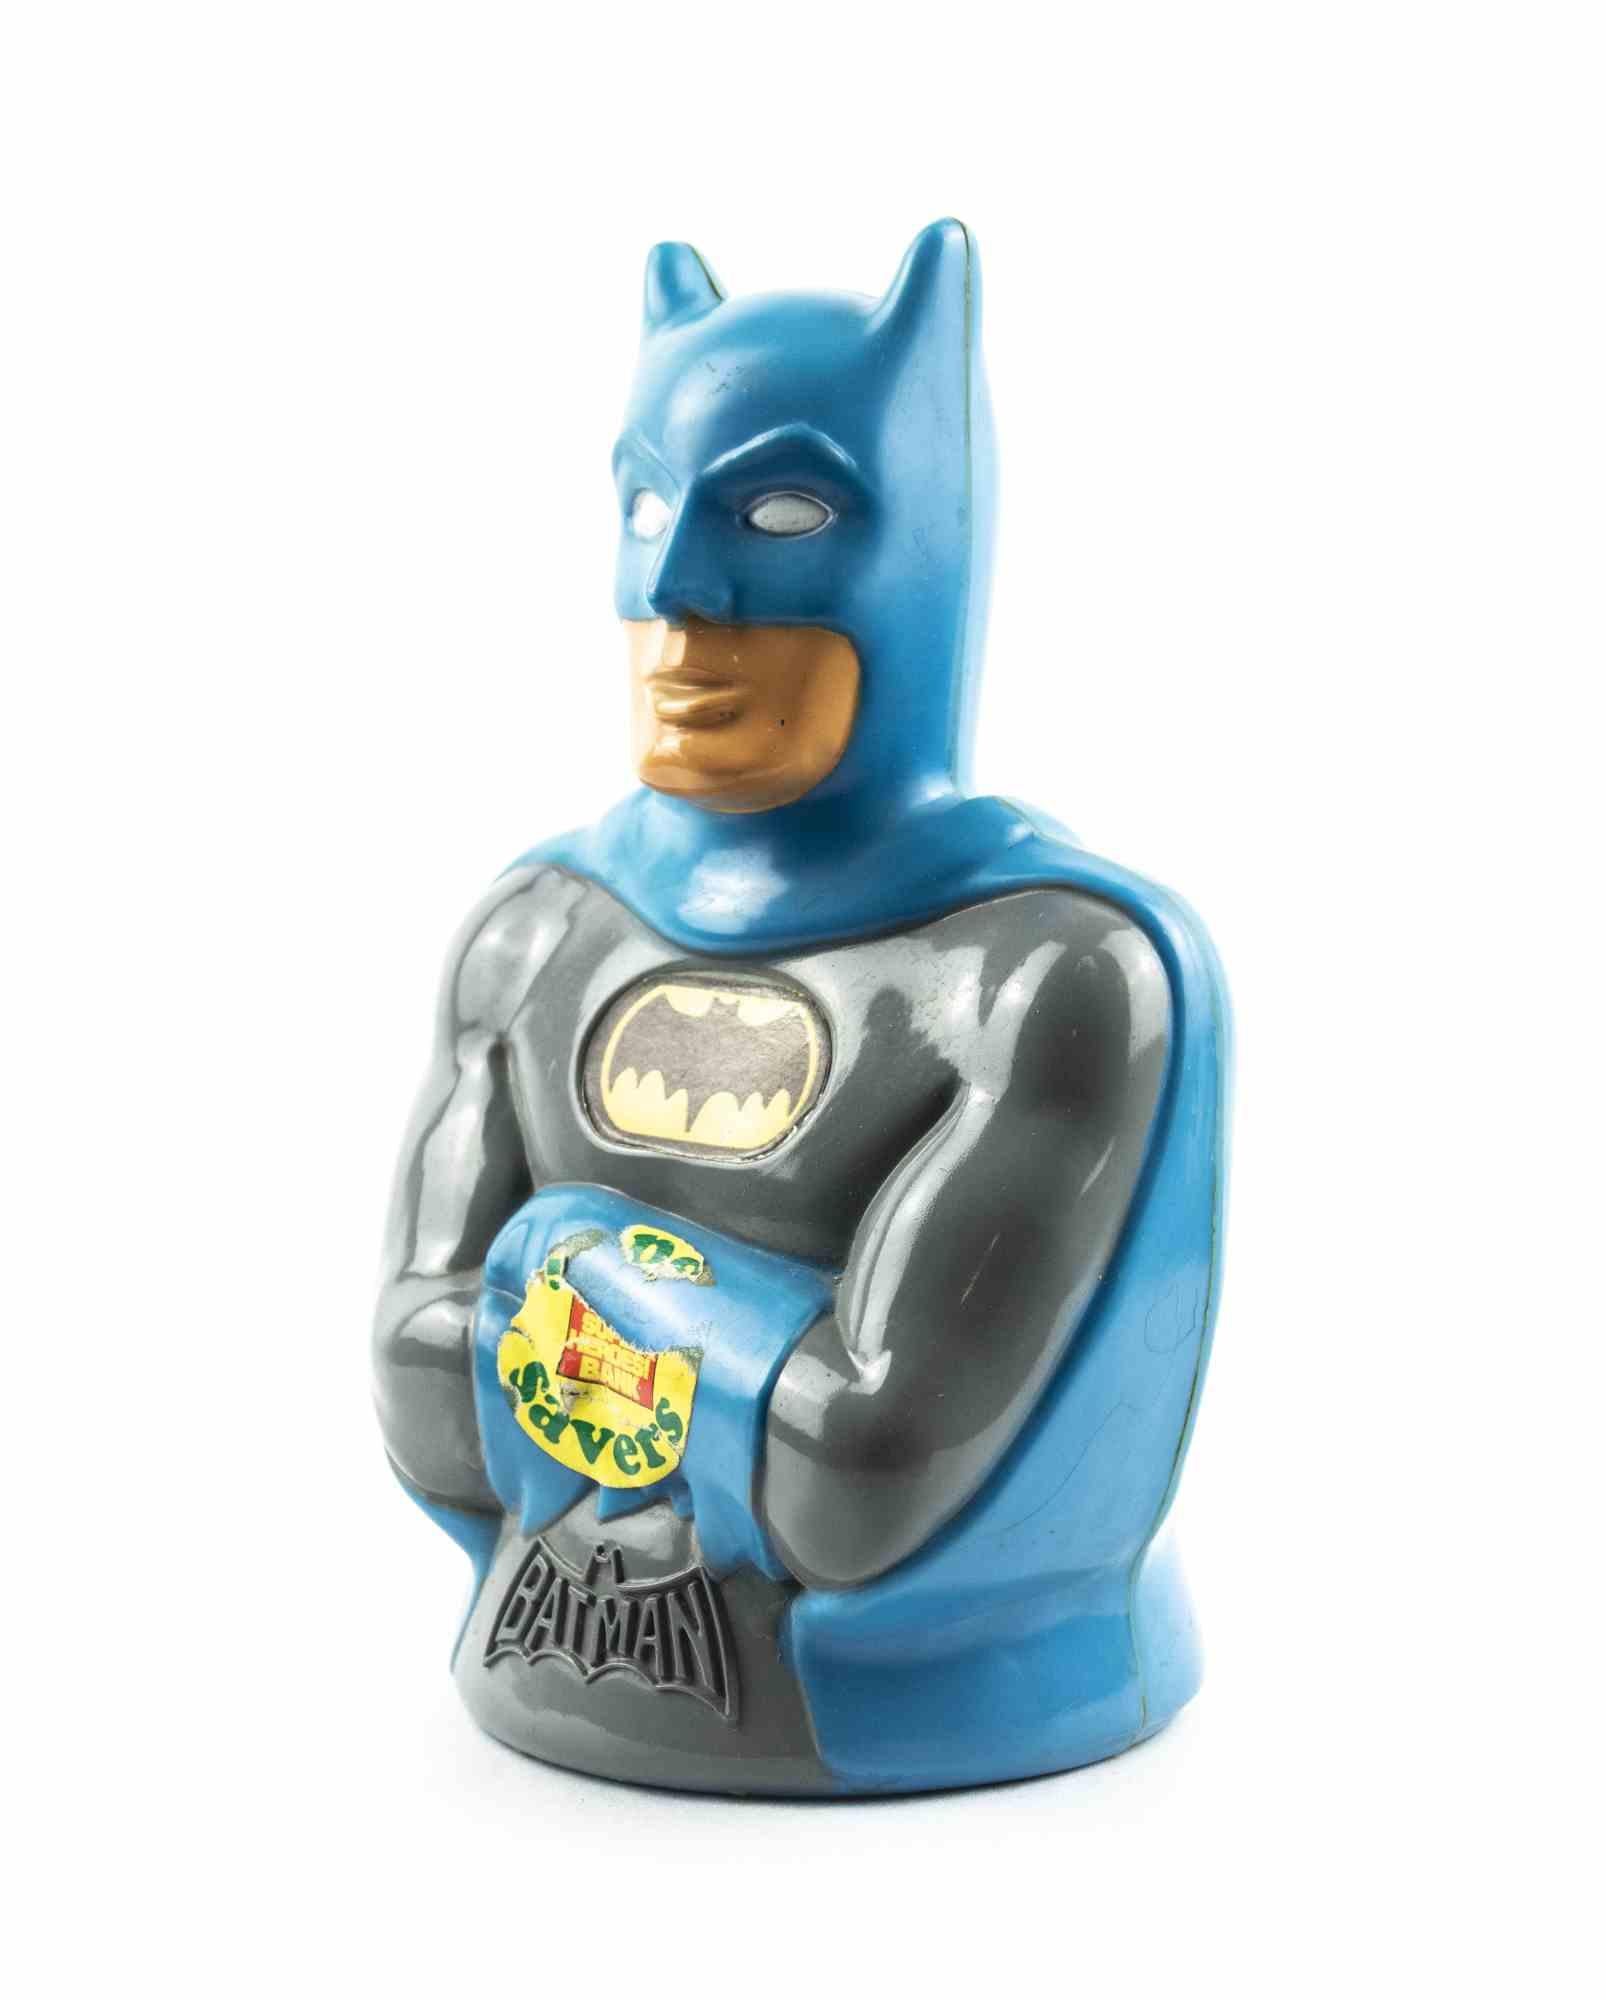 Der Batman-Geldsparer ist ein originelles Dekorationsobjekt aus den 1970er Jahren.

Dieses einzigartige Objekt ist ein Vintage-Geldsparer in Form des Superhelden Batman, der in den USA hergestellt wurde.

Originaletikett (nicht in gutem Zustand)